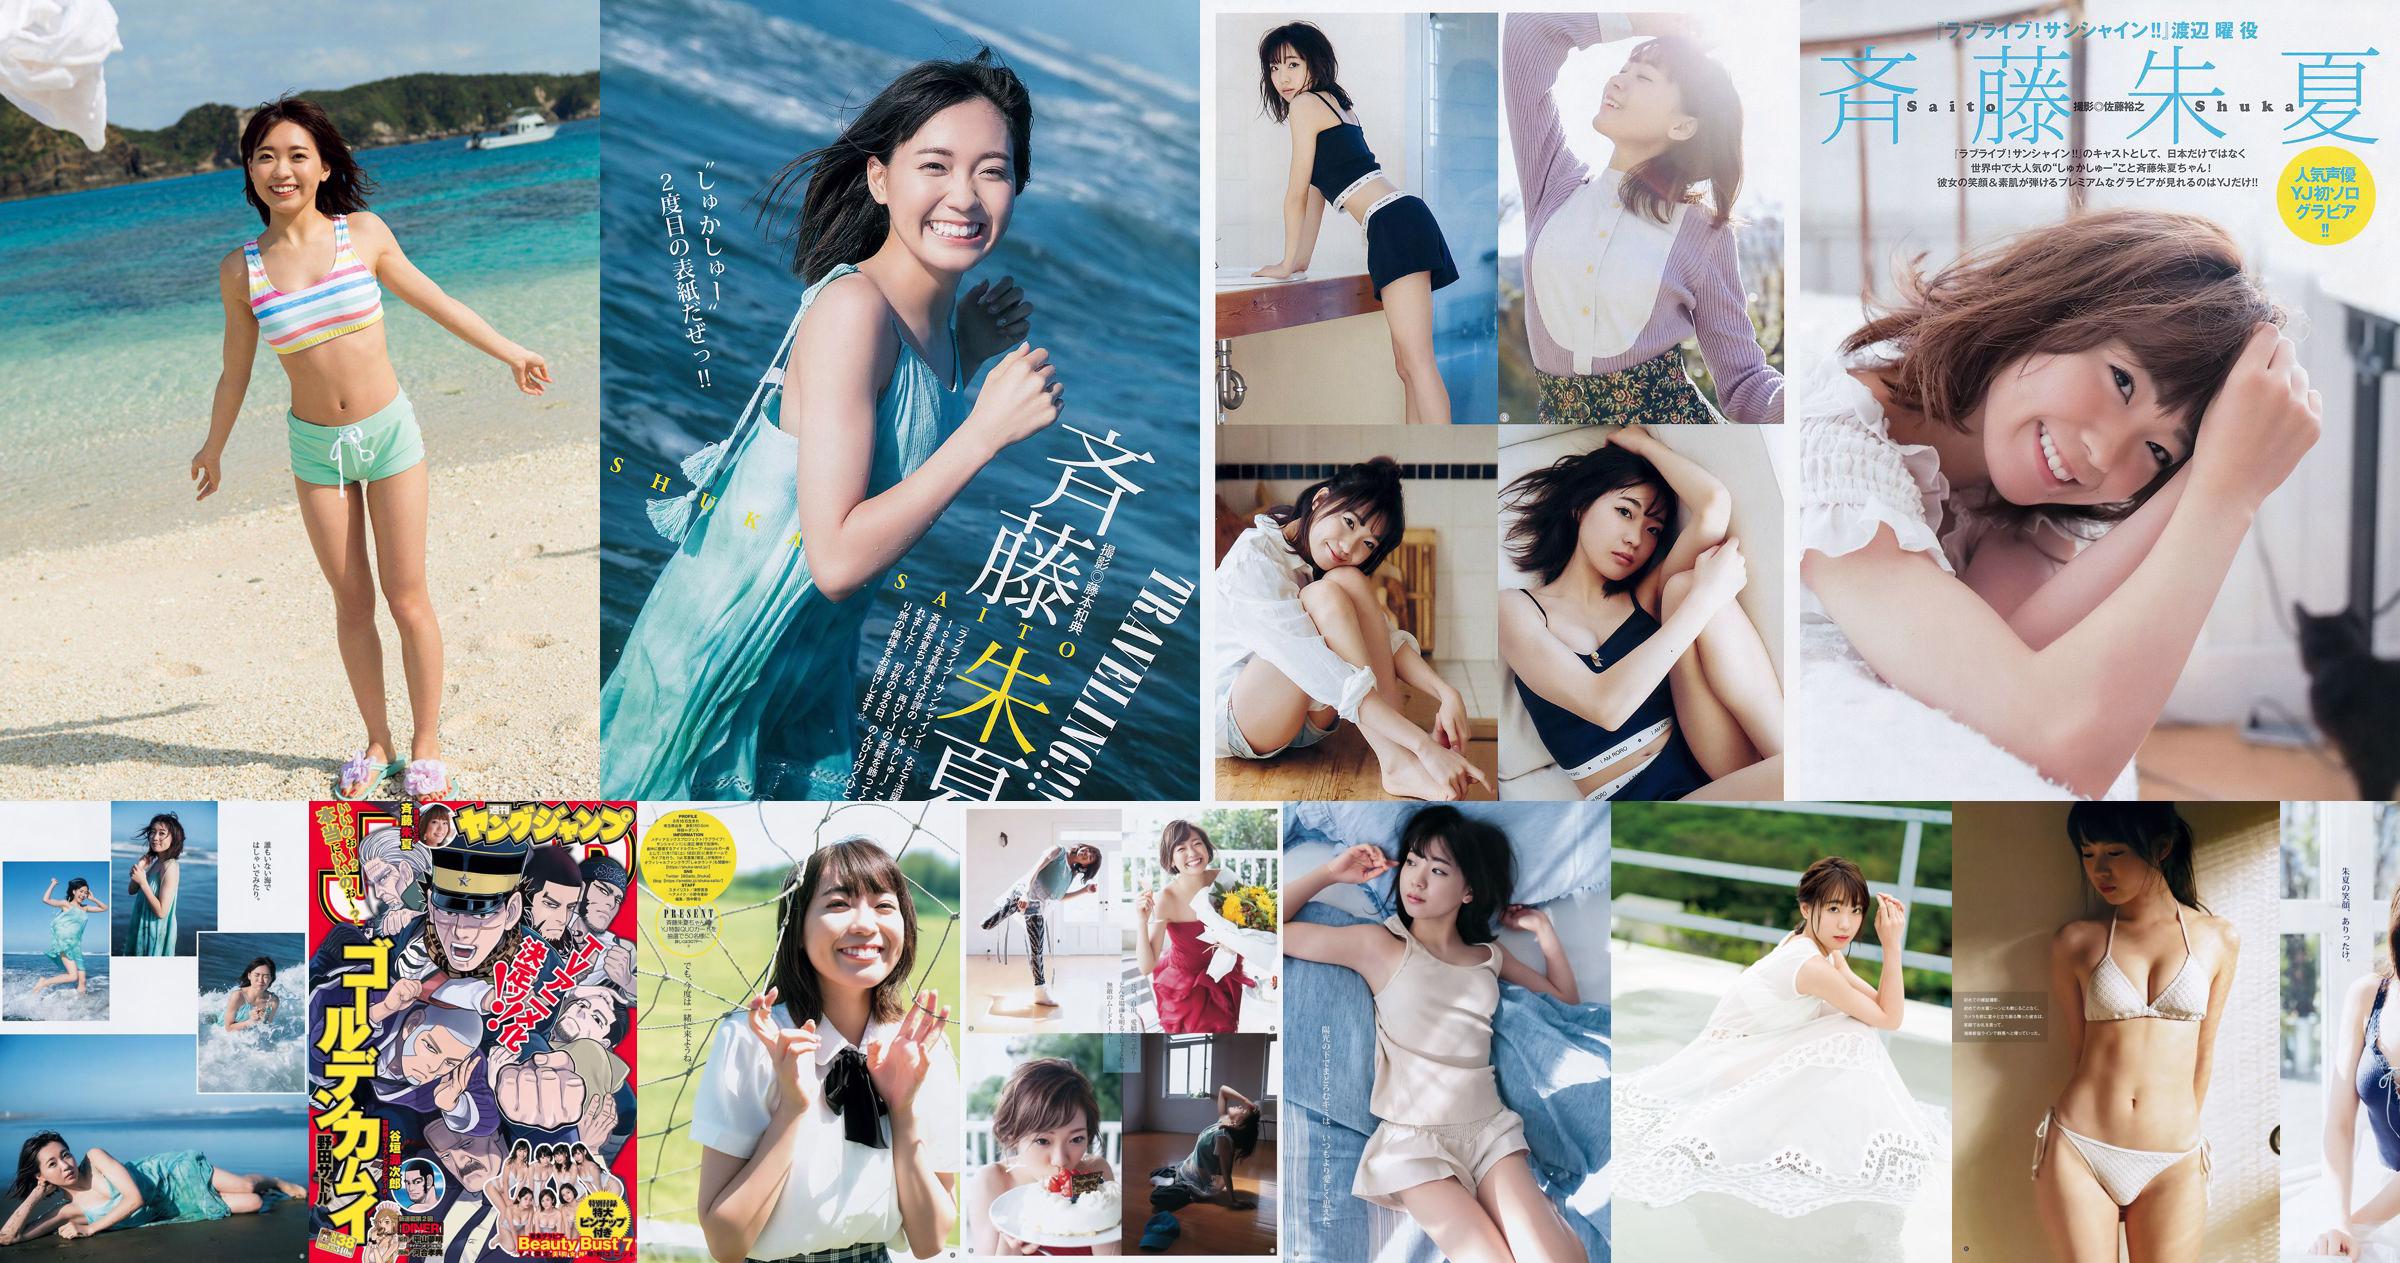 Shuka Saito Beauty Bust 7 [Weekly Young Jump] 2017 No.38 Photo No.21183c Page 1